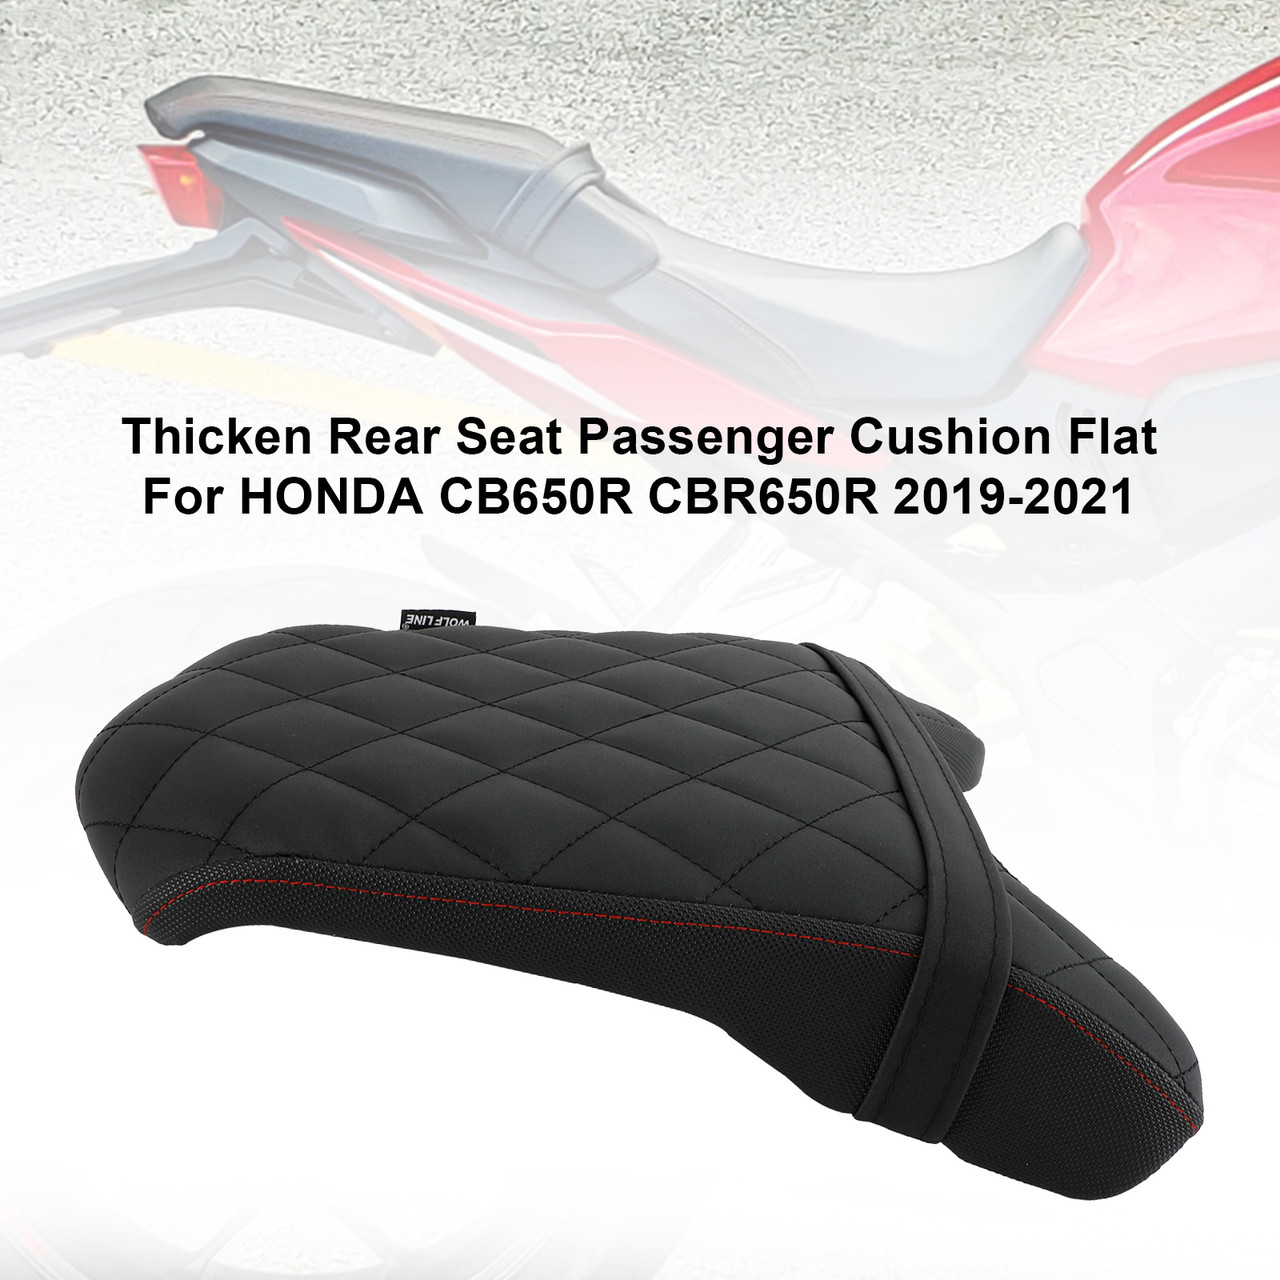 19-21 Honda Cb650R Cbr650R Tail Rear Seat Passenger Cushion Flat Black B